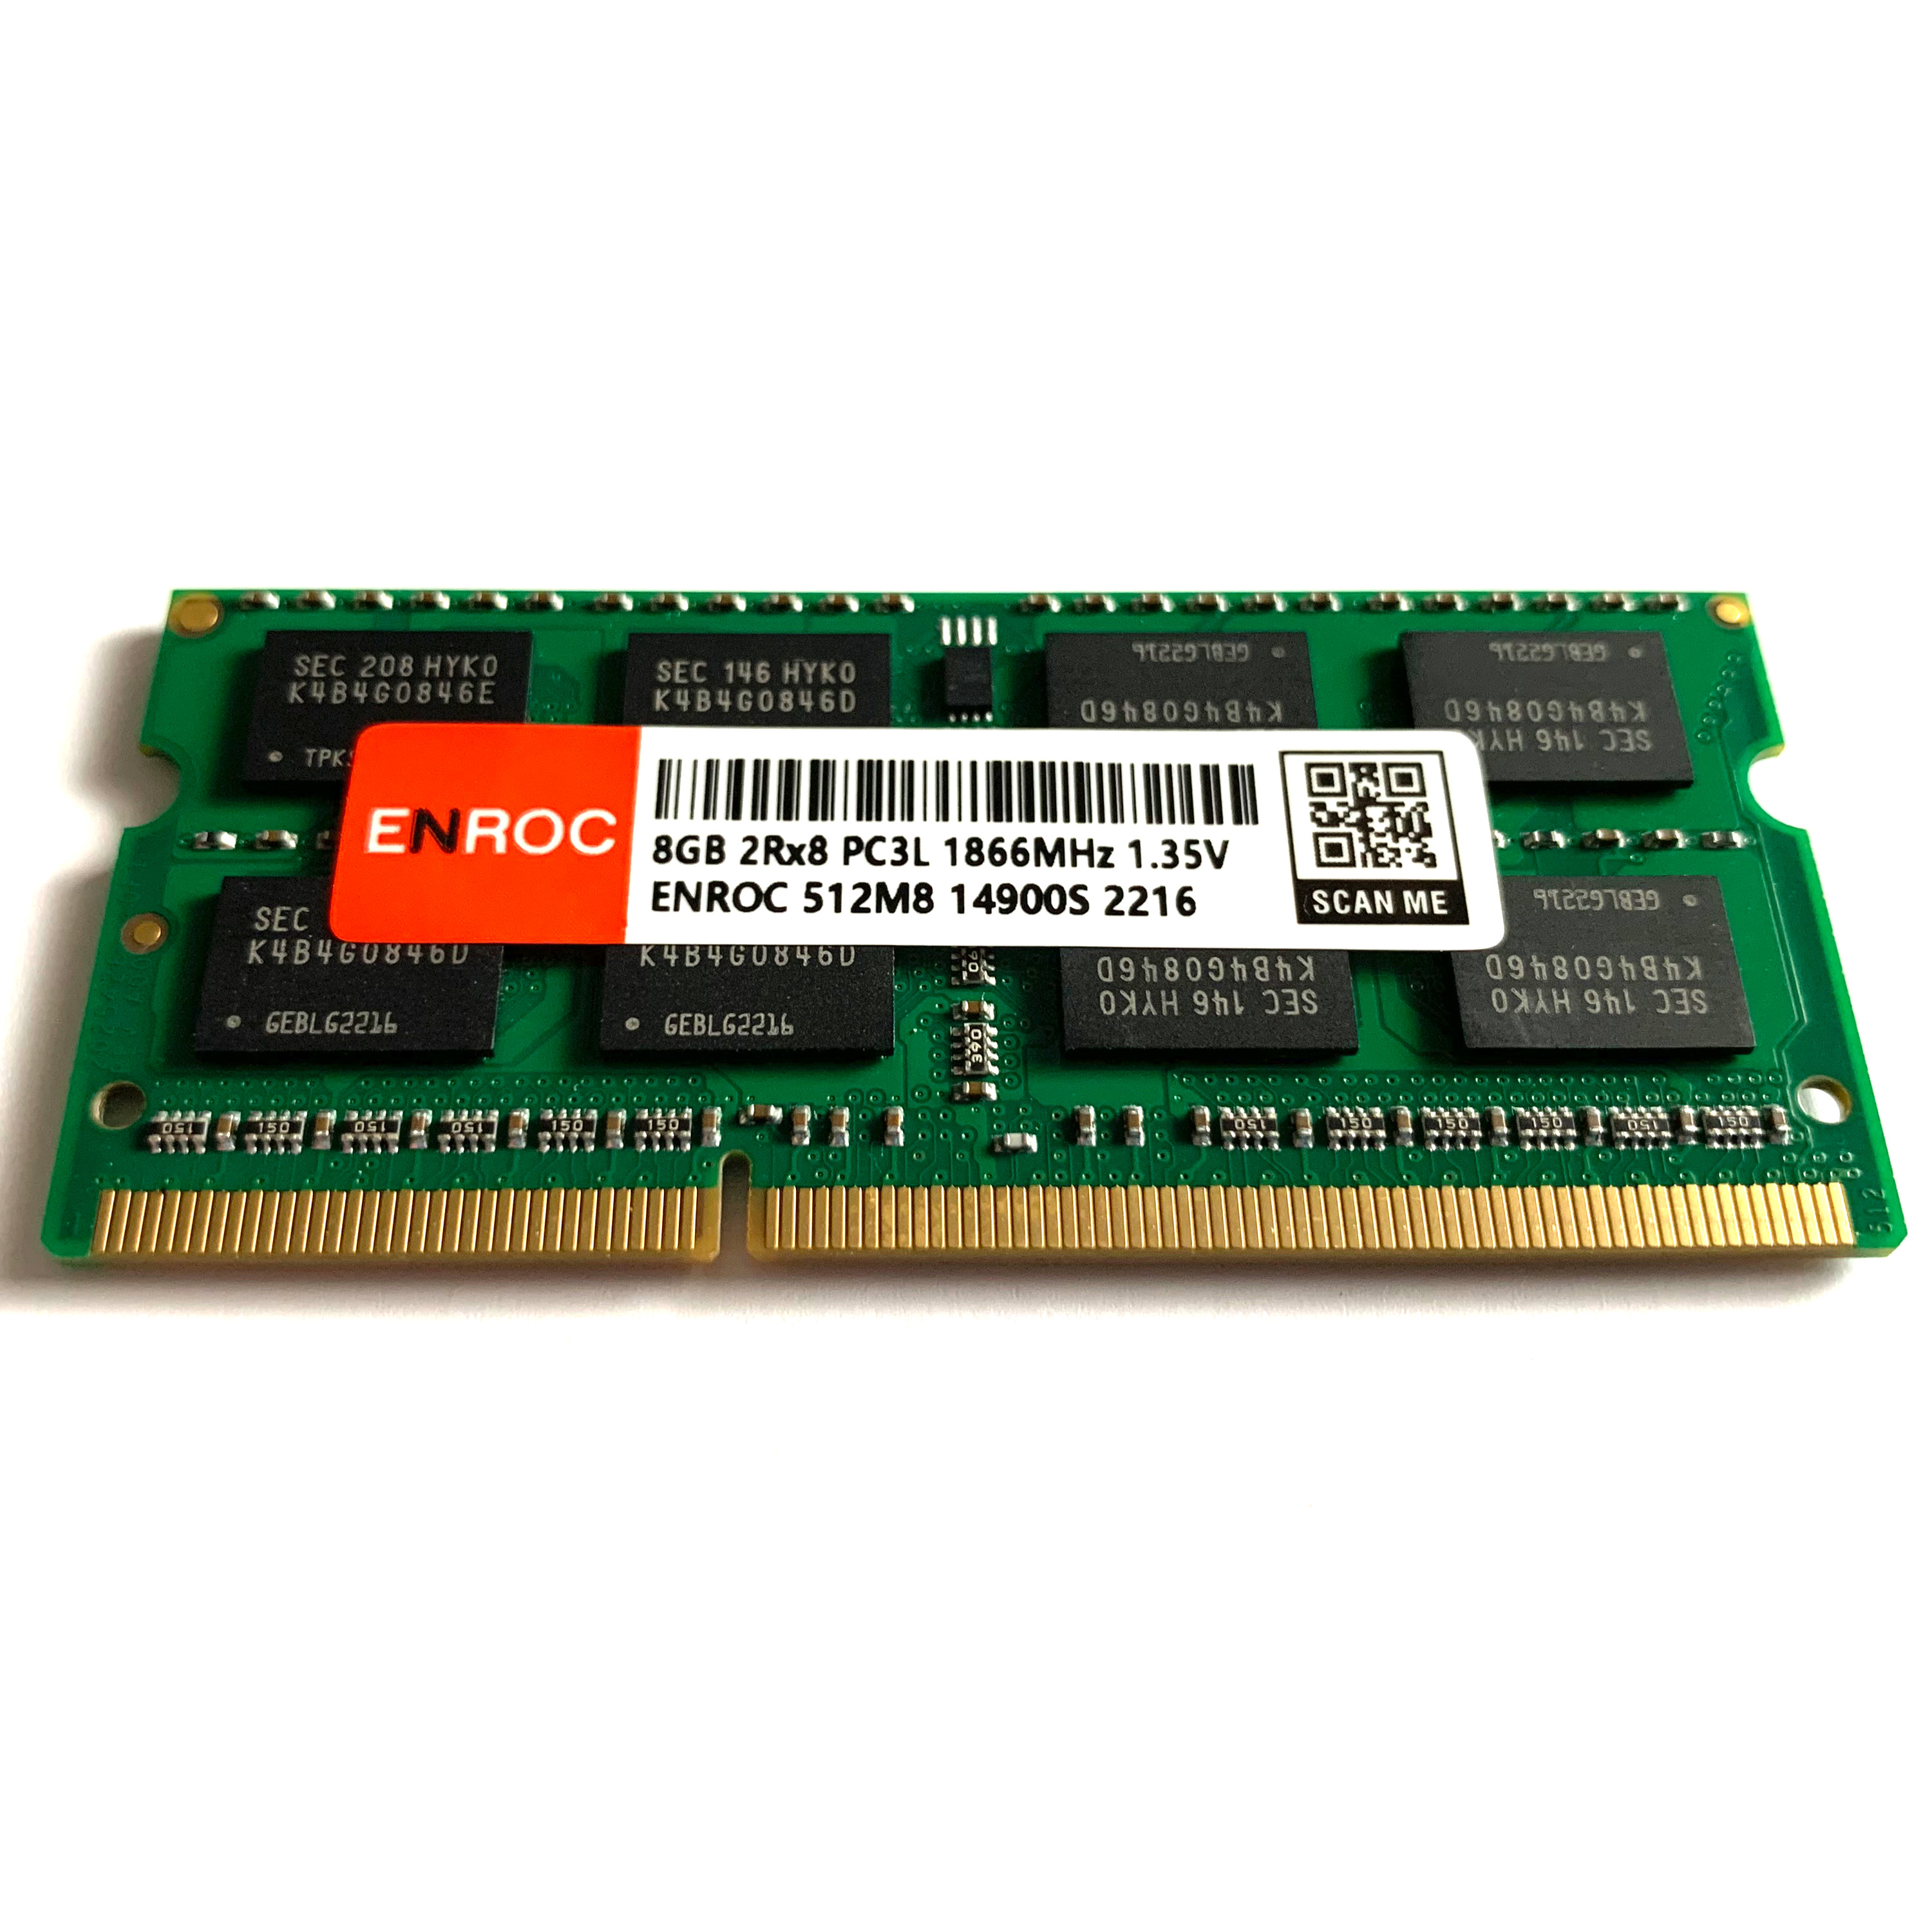 ENROC ERC421 RAM 8 DDR3L MHz Arbeitsspeicher 8GB SO-DIMM 1866 DDR3L GB